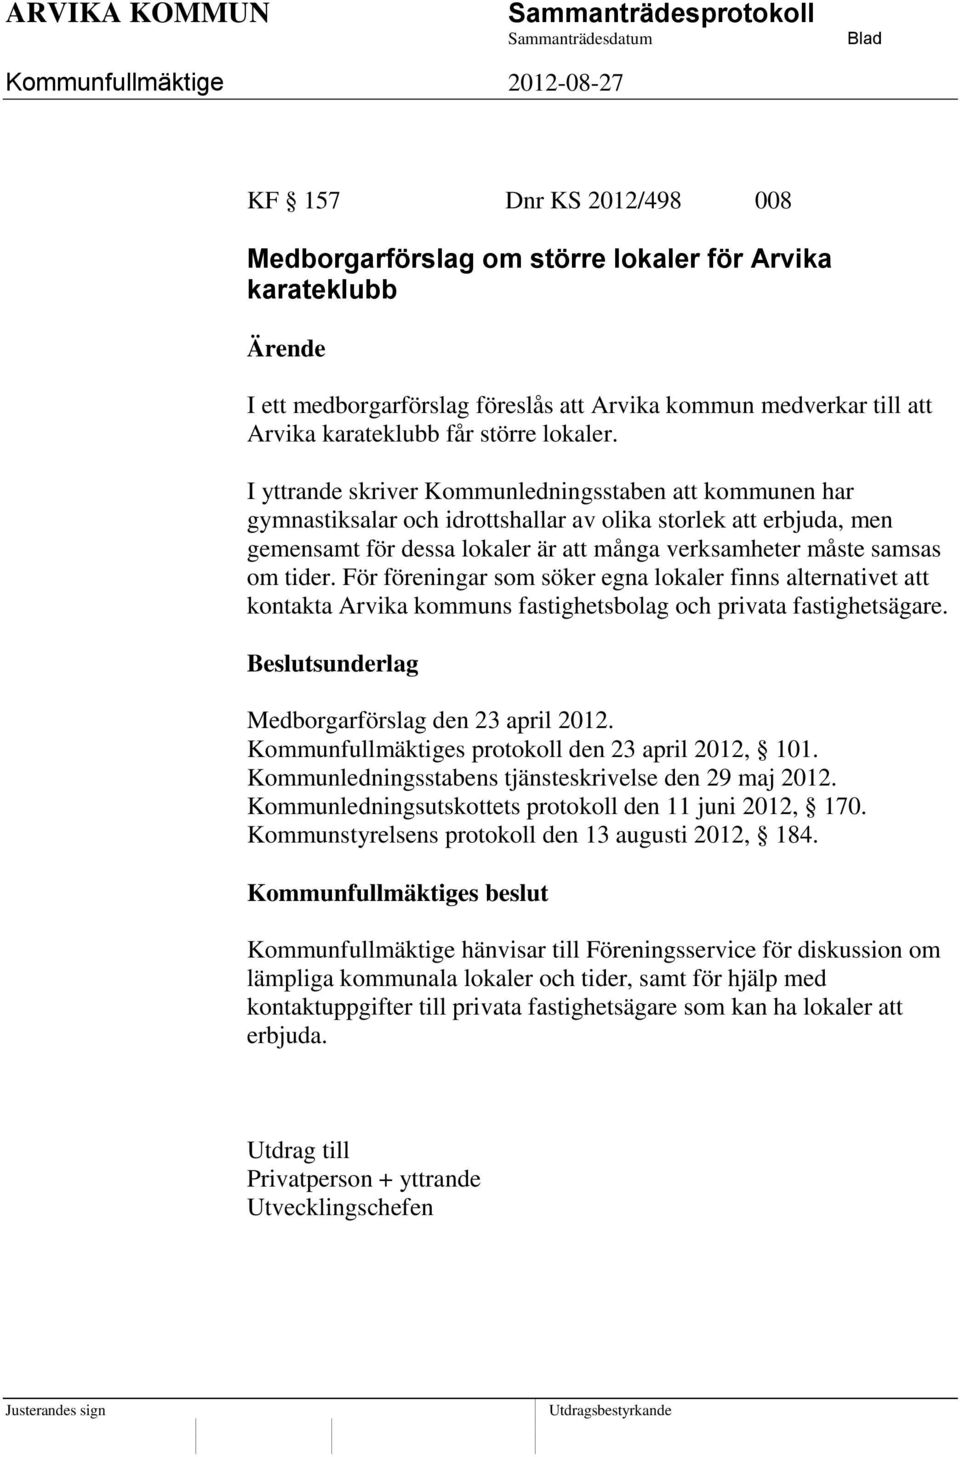 För föreningar som söker egna lokaler finns alternativet att kontakta Arvika kommuns fastighetsbolag och privata fastighetsägare. Medborgarförslag den 23 april 2012.